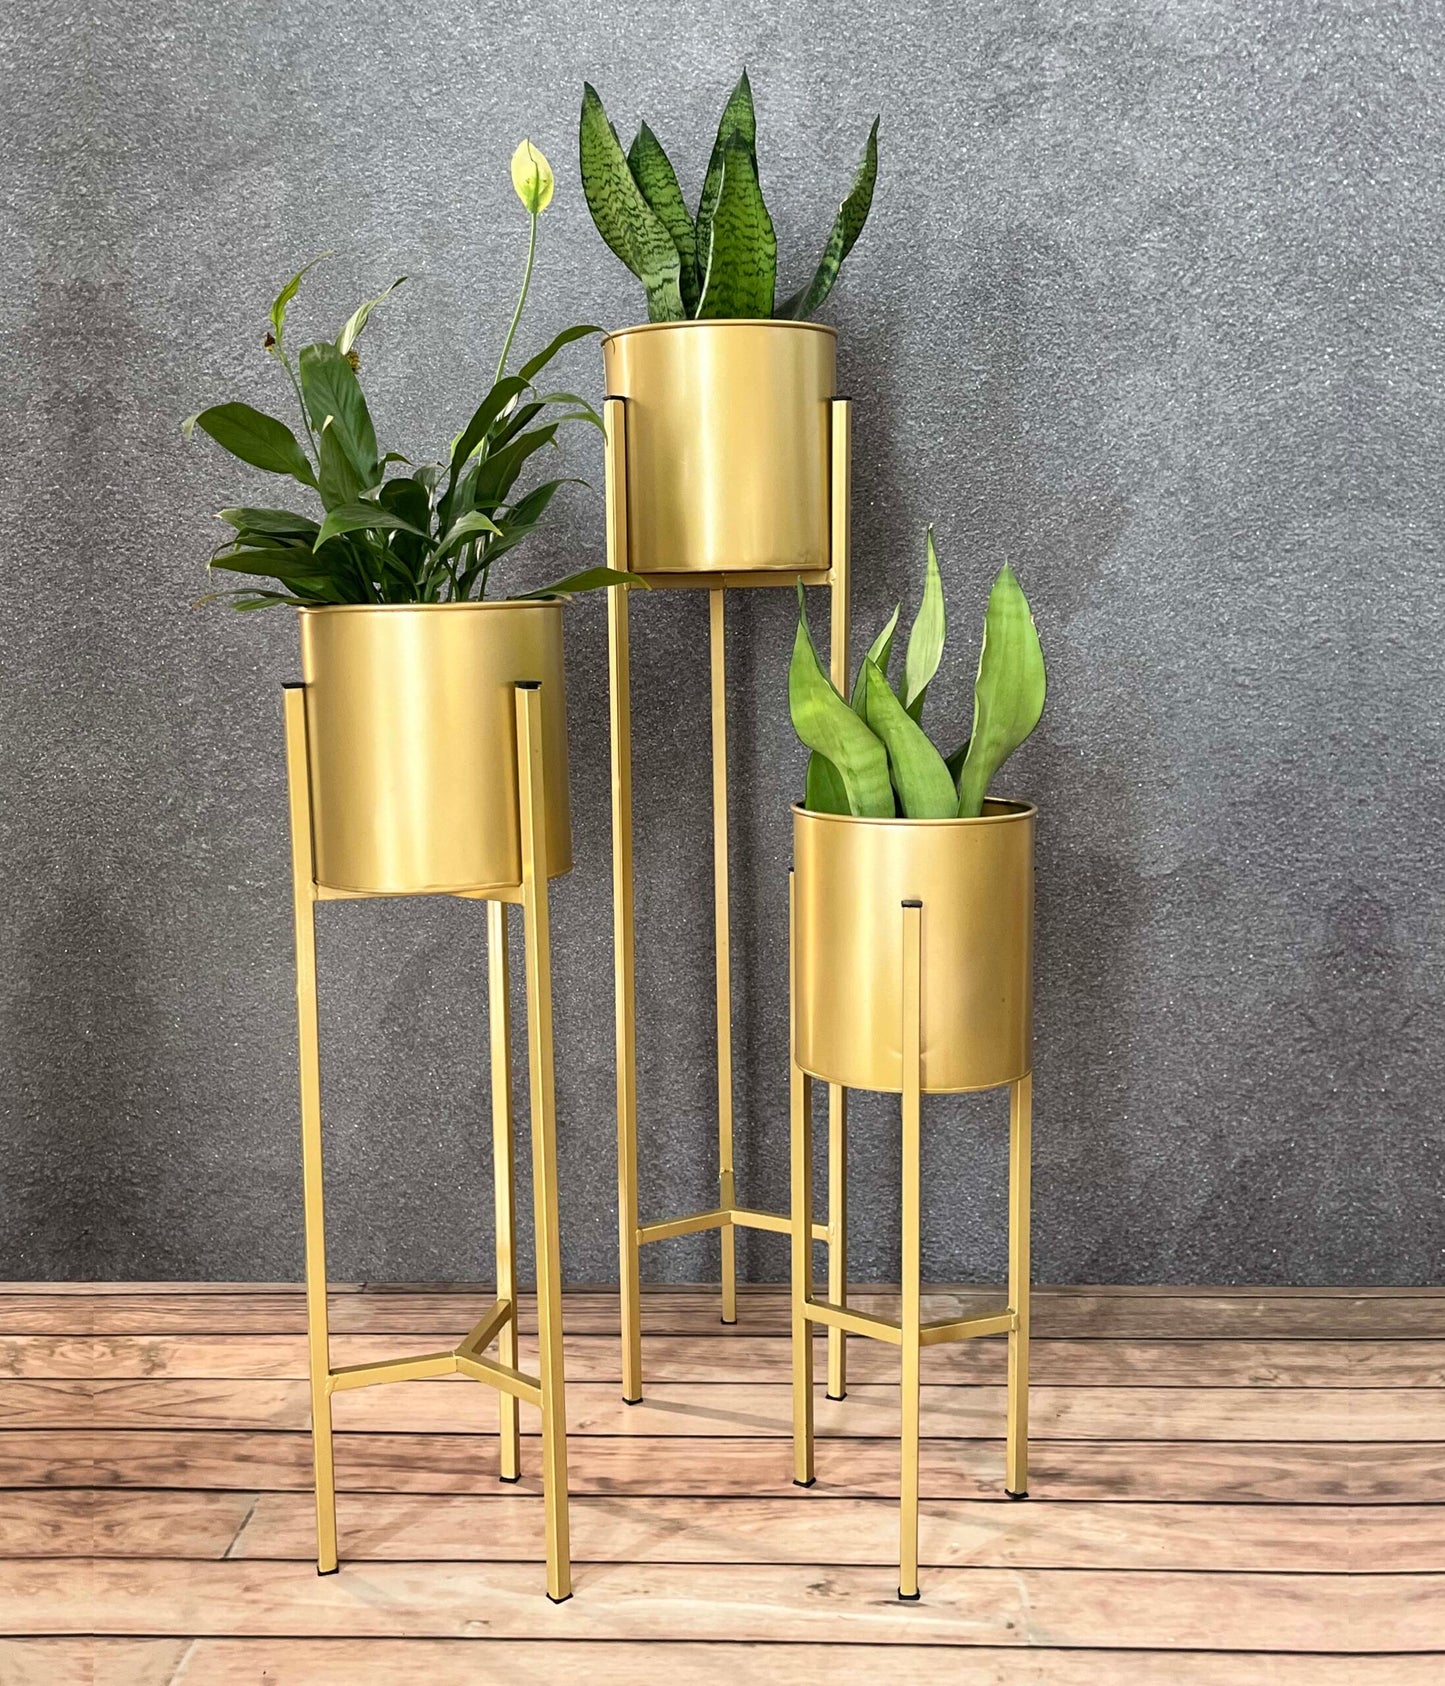 Indoor Golden Metal Planters with Stands